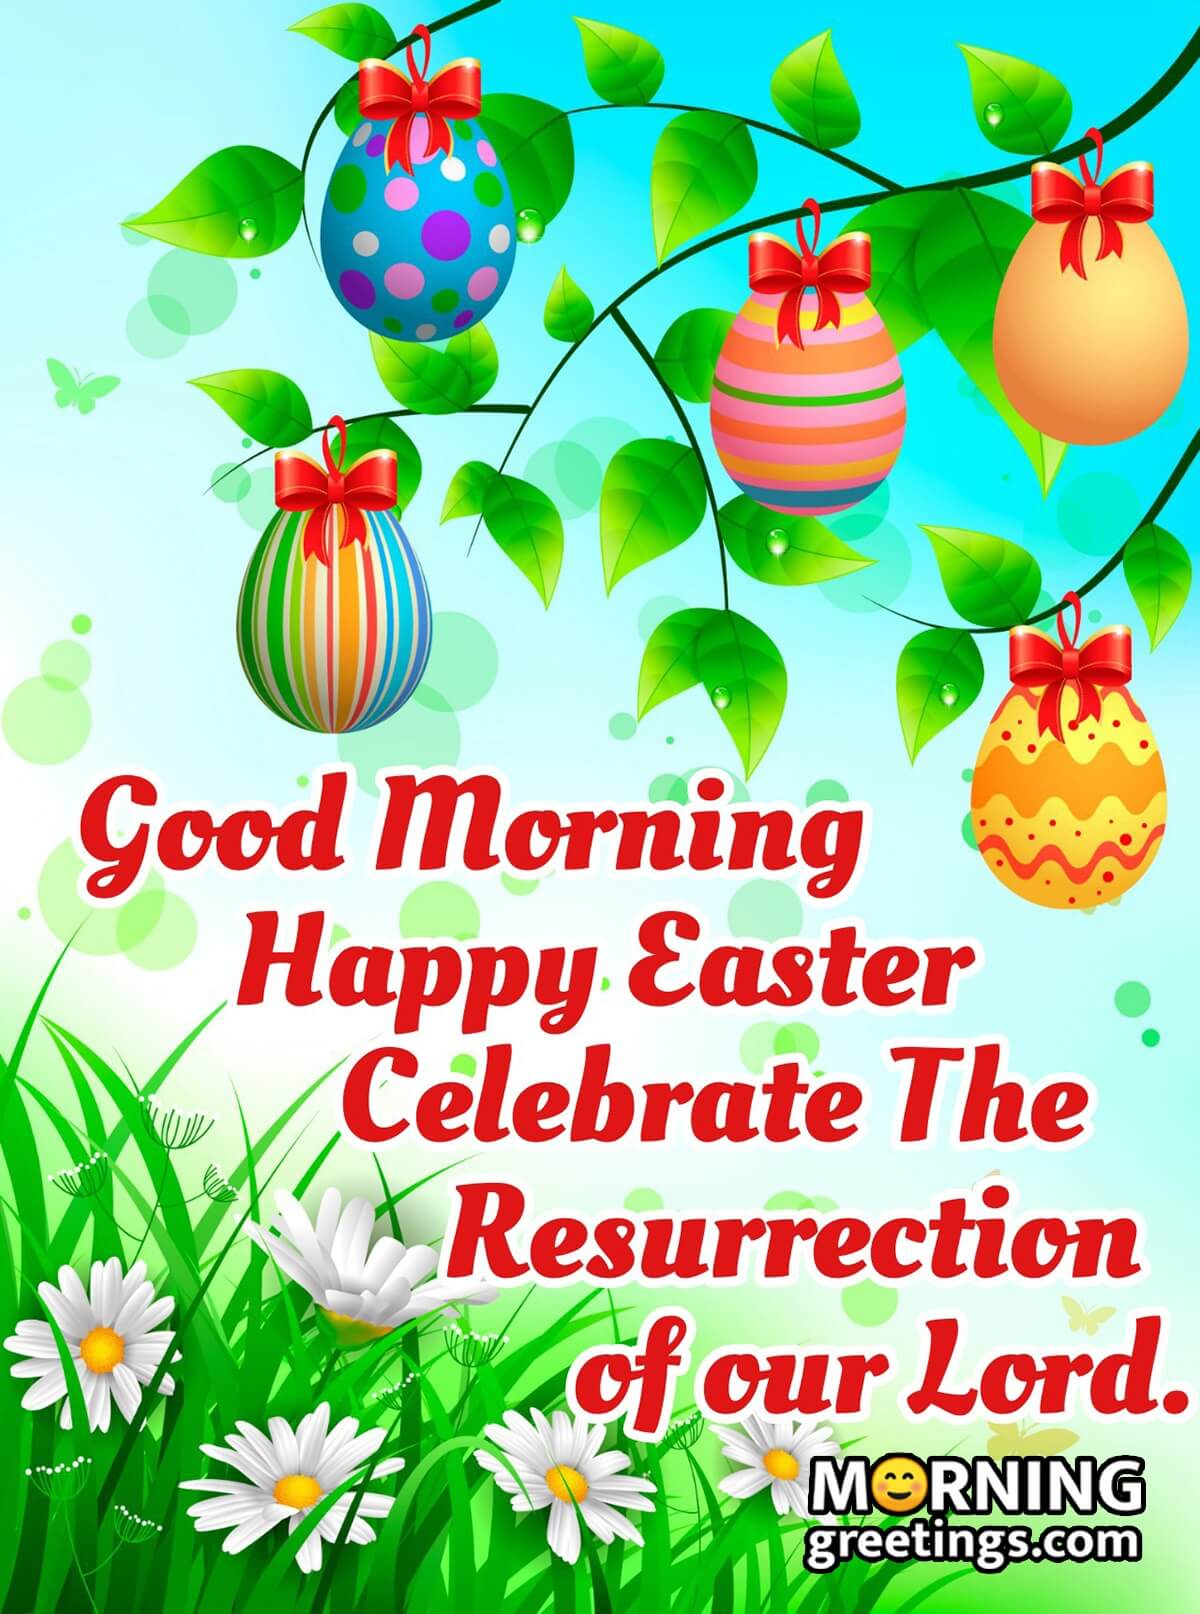 Good Morning Celebrate Easter